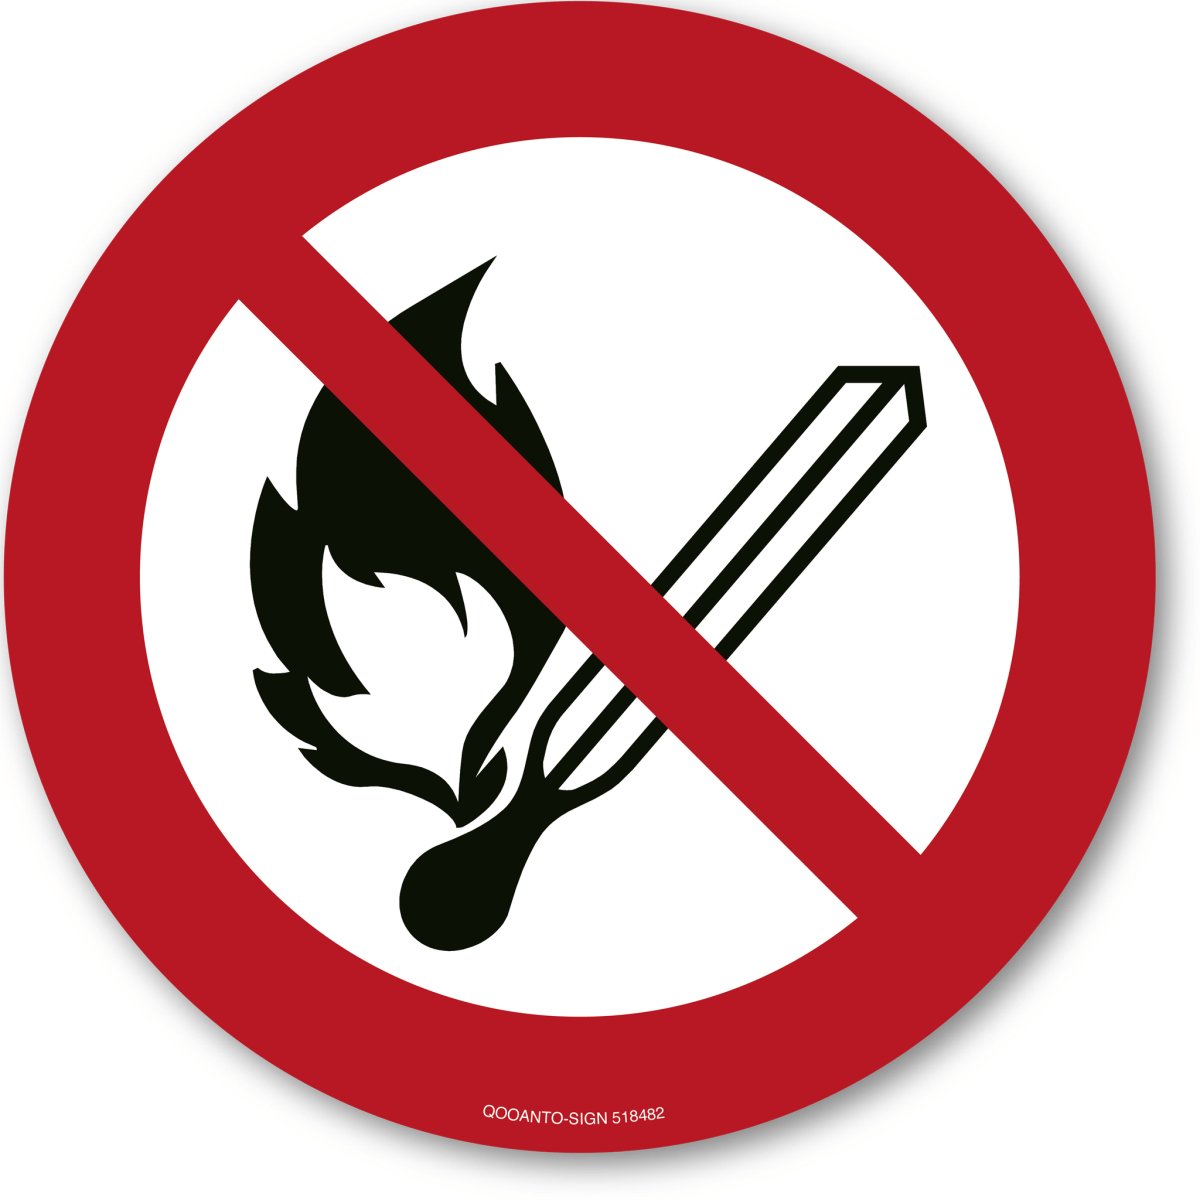 Keine Offene Flamme Feuer Offene Zündquelle Und Rauchen Verboten, EN ISO 7010, P003 Verbotsschild oder Aufkleber aus Alu-Verbund oder Selbstklebefolie mit UV-Schutz - QOOANTO-SIGN